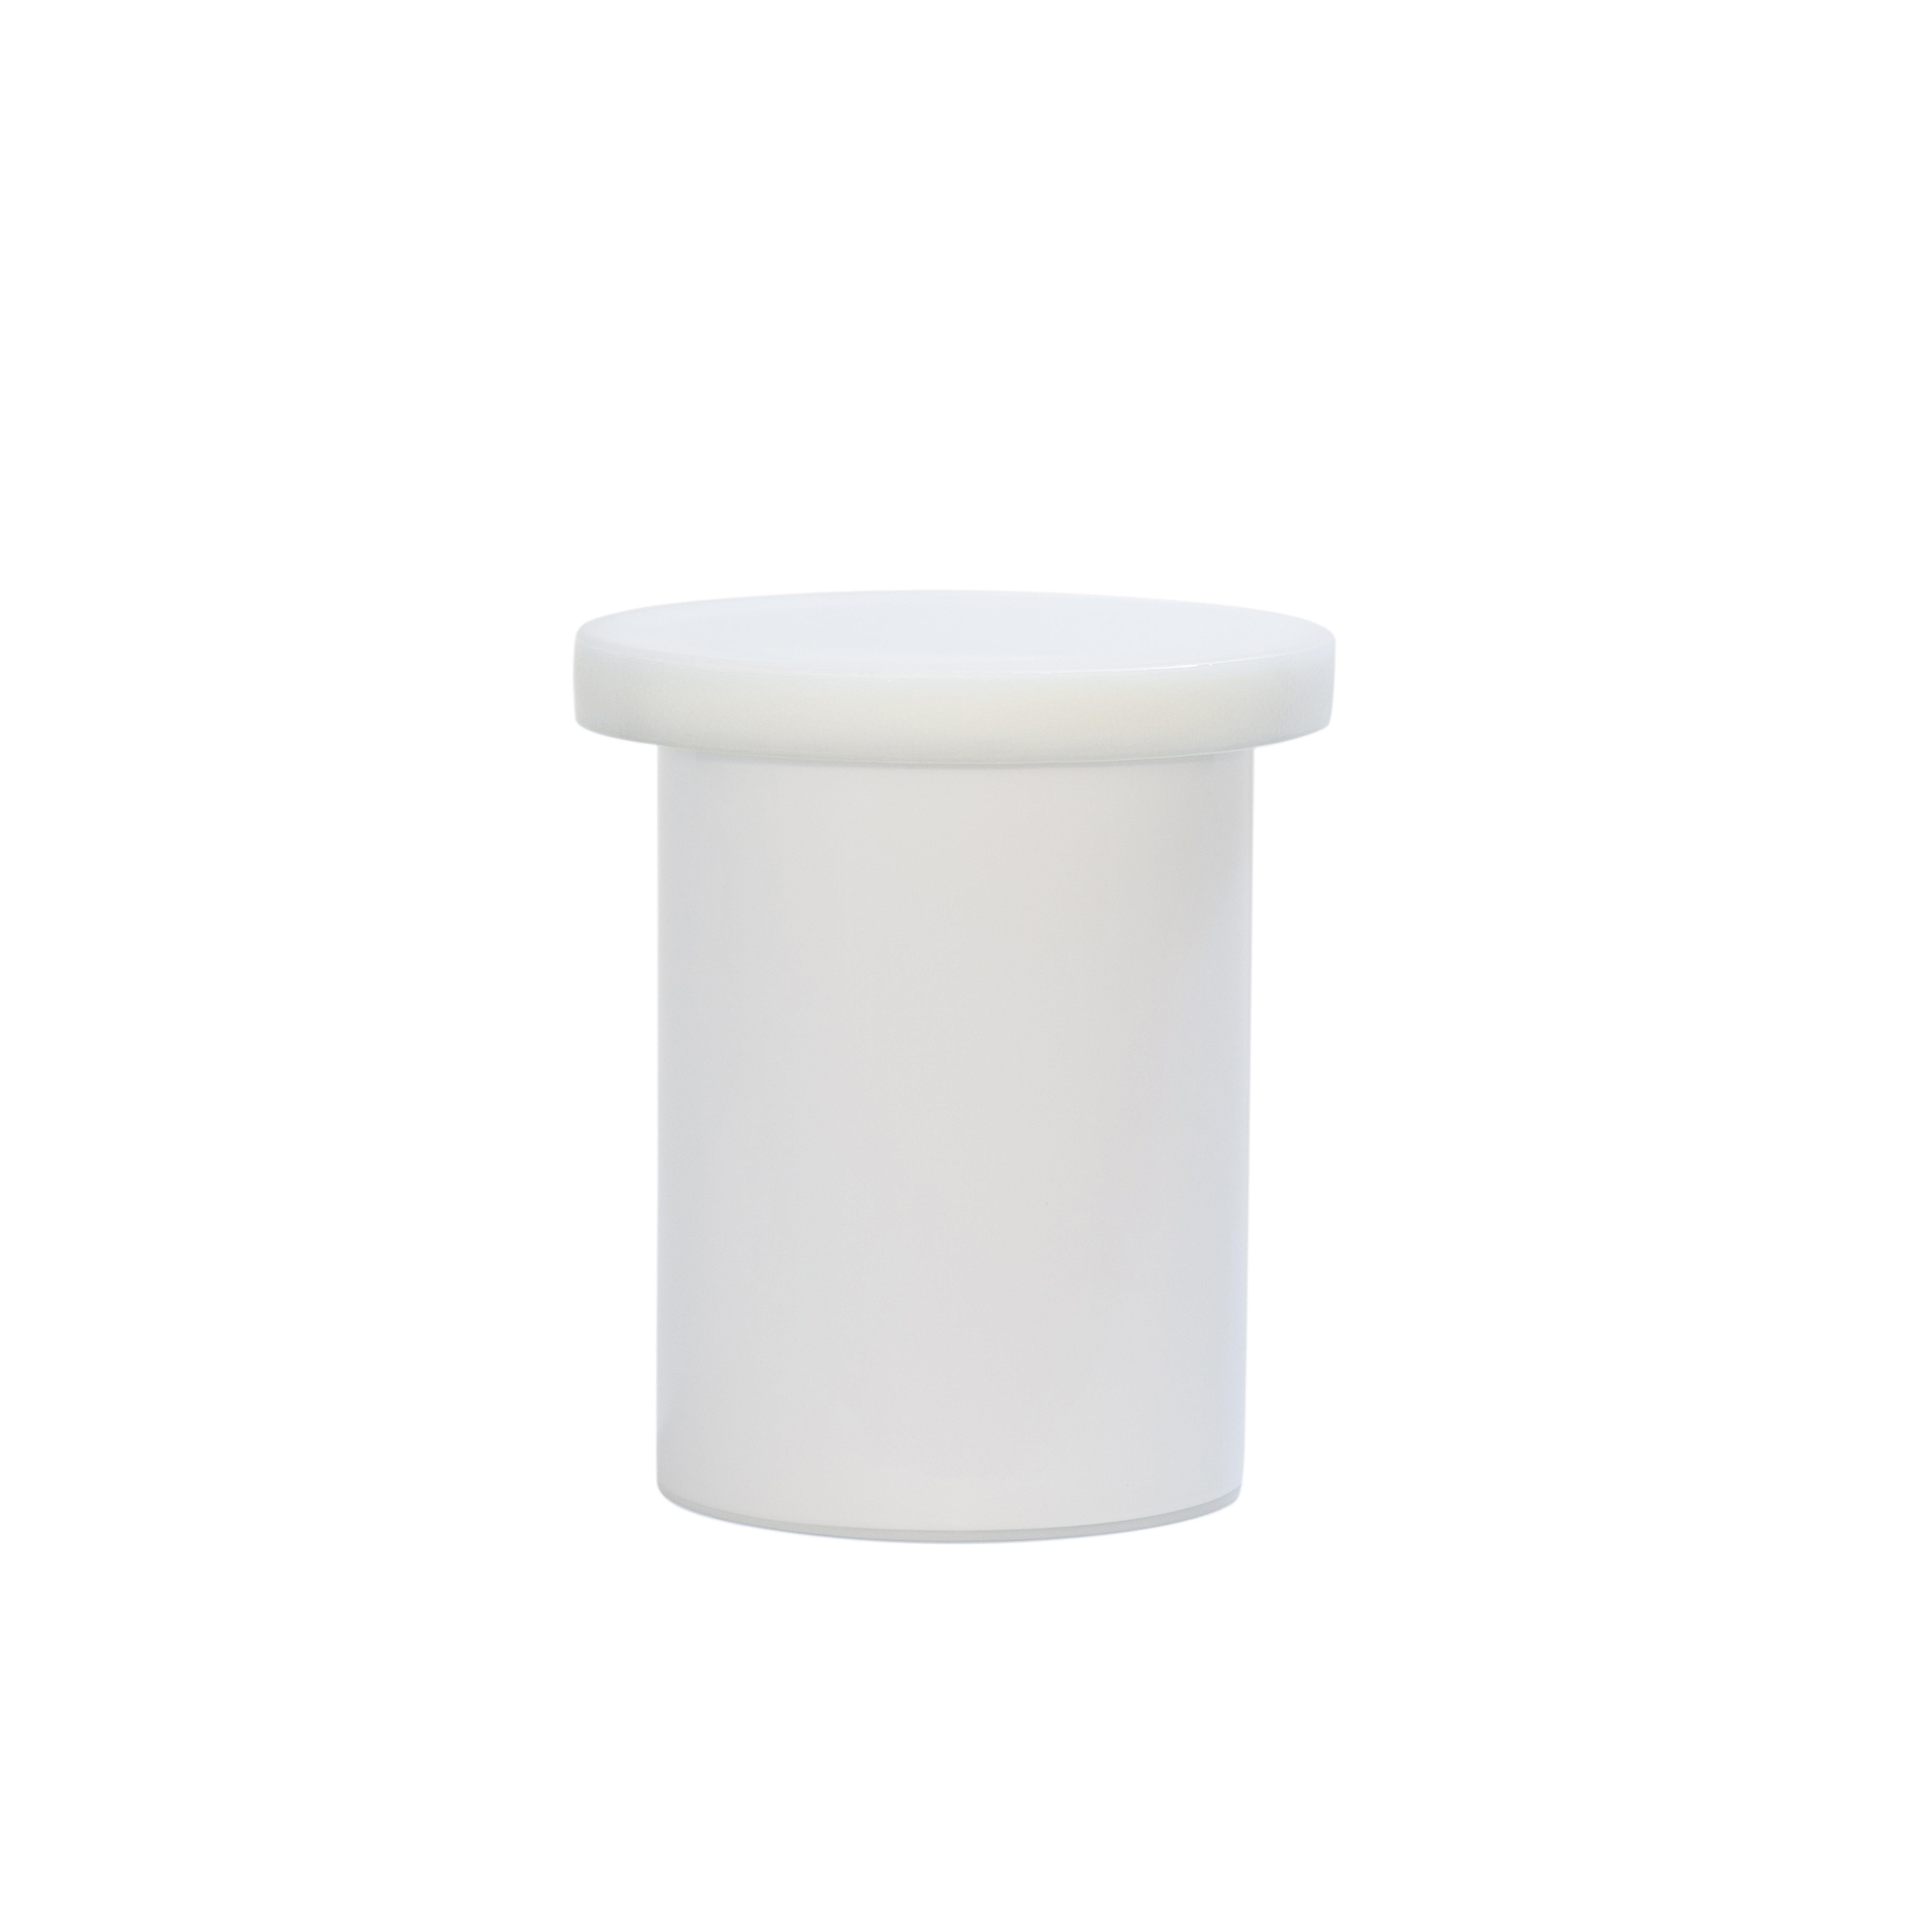 Table d'appoint Alwa three white par Pulpo
Dimensions : D38 x H44 cm
MATERIAL : verre moulé et soufflé à la main

Disponible également en différentes couleurs. 

Normalement, le verre est considéré comme un matériau léger aux arêtes vives. En